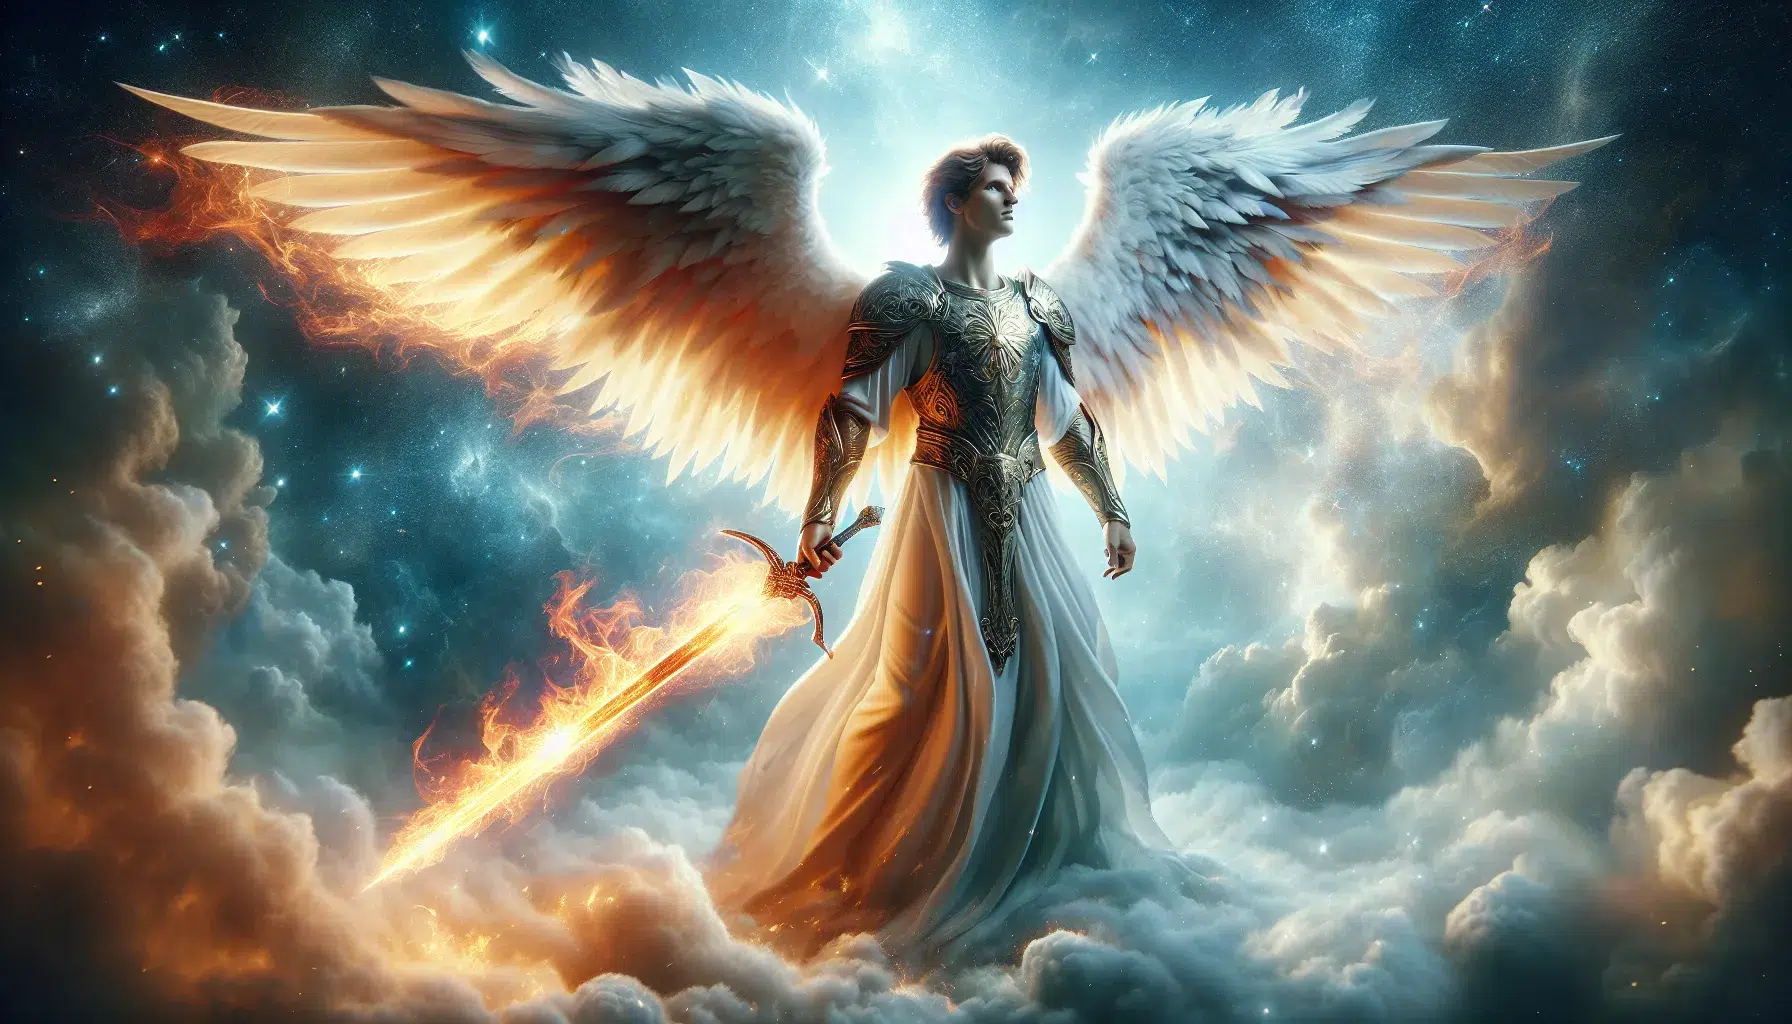 Representación artística de un ángel con una espada flameante